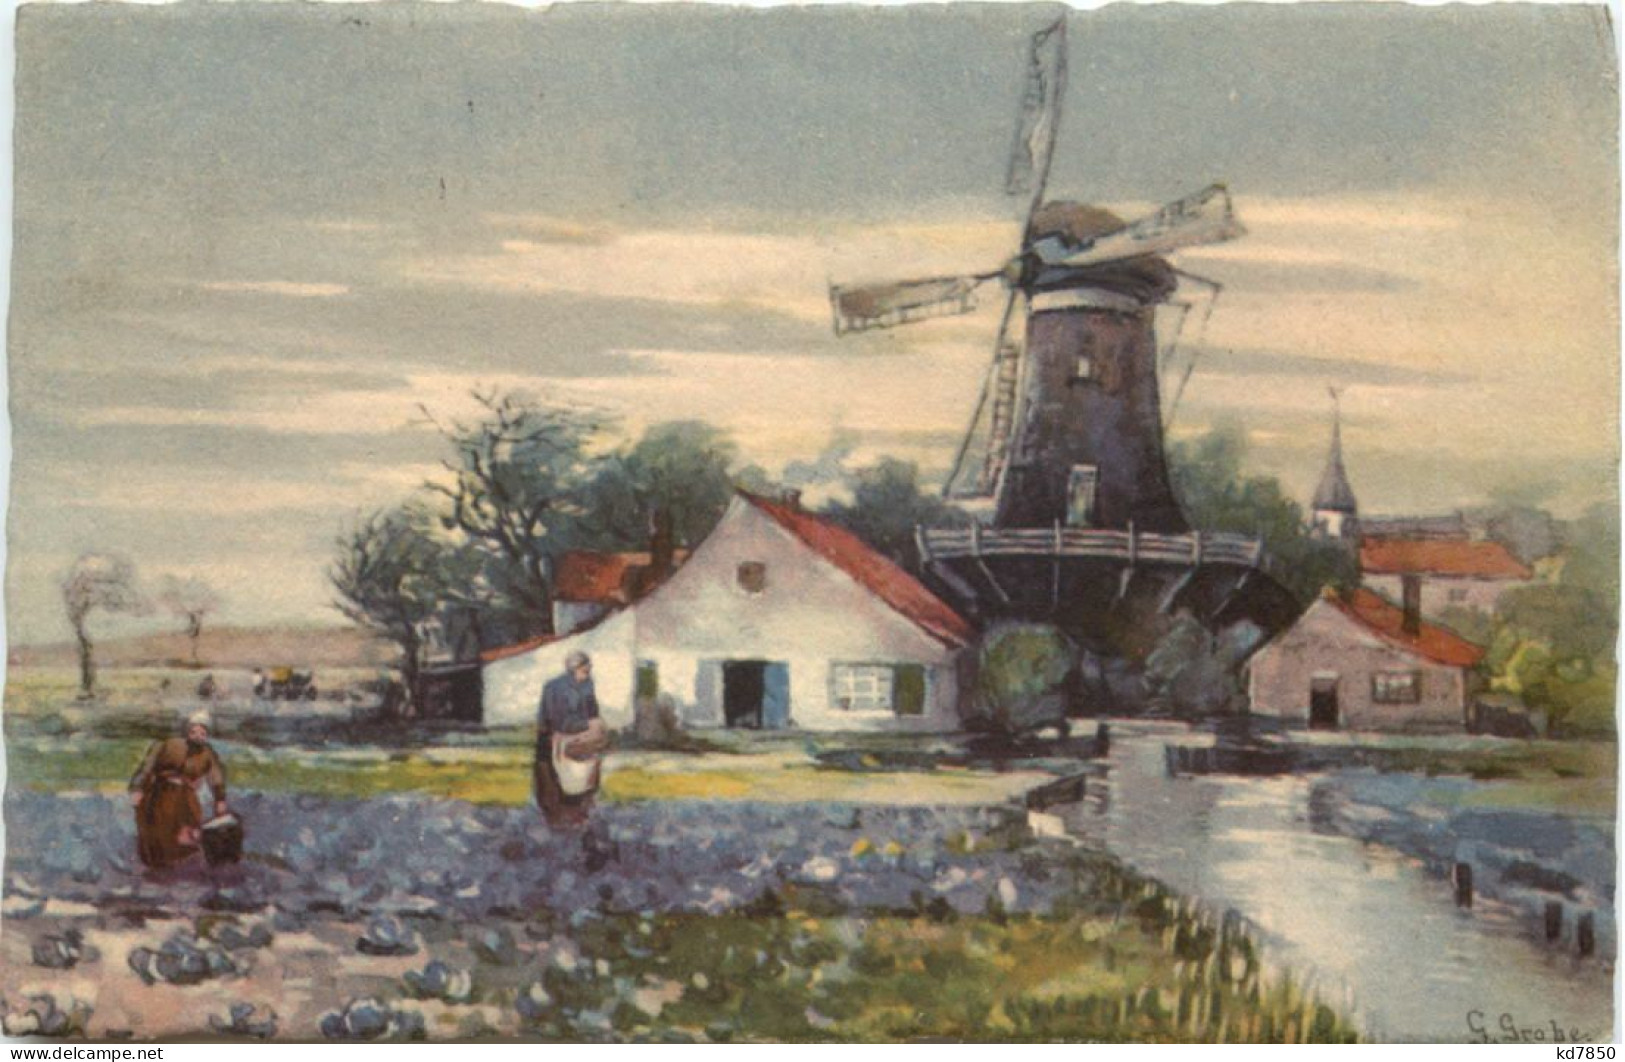 Windmühle - Moulins à Vent